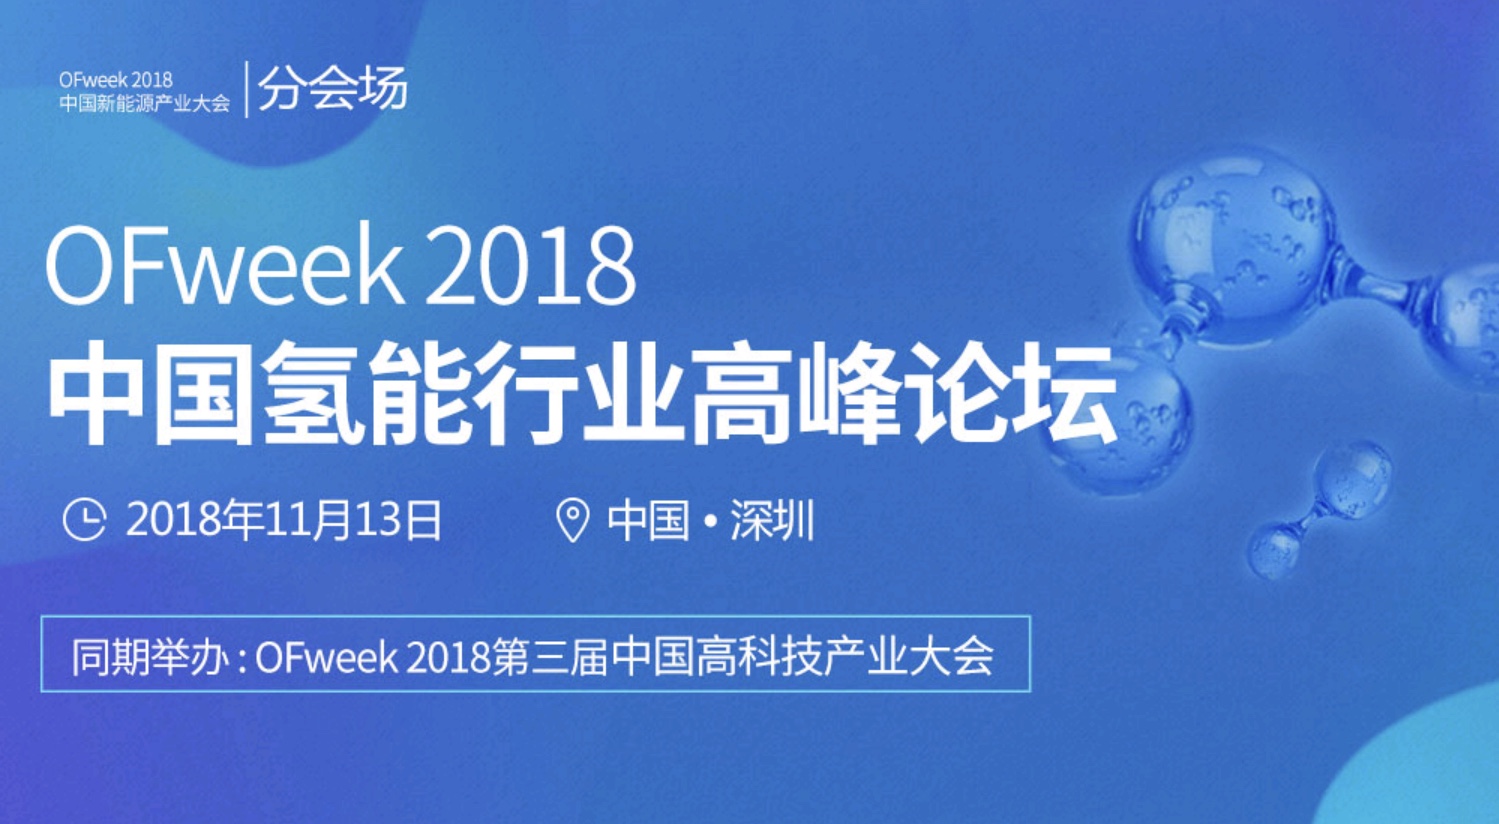 中国地质大教授程寒松将出席OFweek2018中国氢能行业高峰论坛并发表演讲